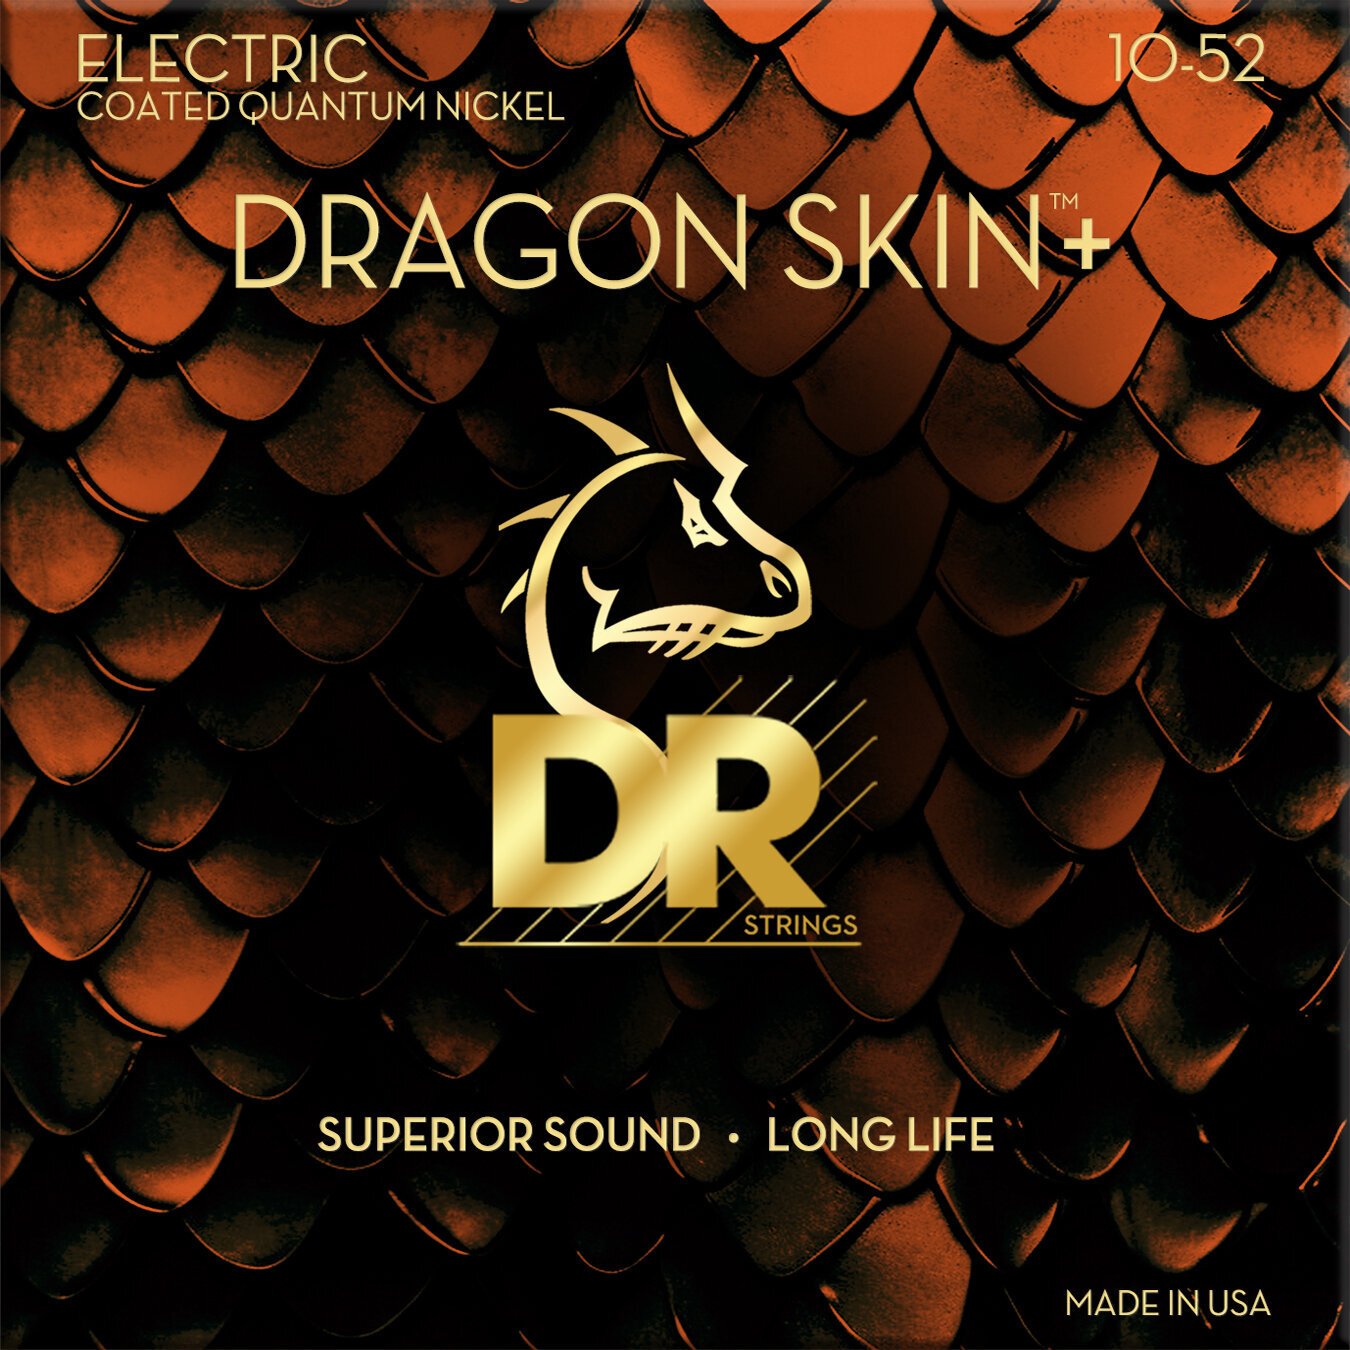 Cordes pour guitares électriques DR Strings Dragon Skin+ Coated Medium to Heavy 10-52